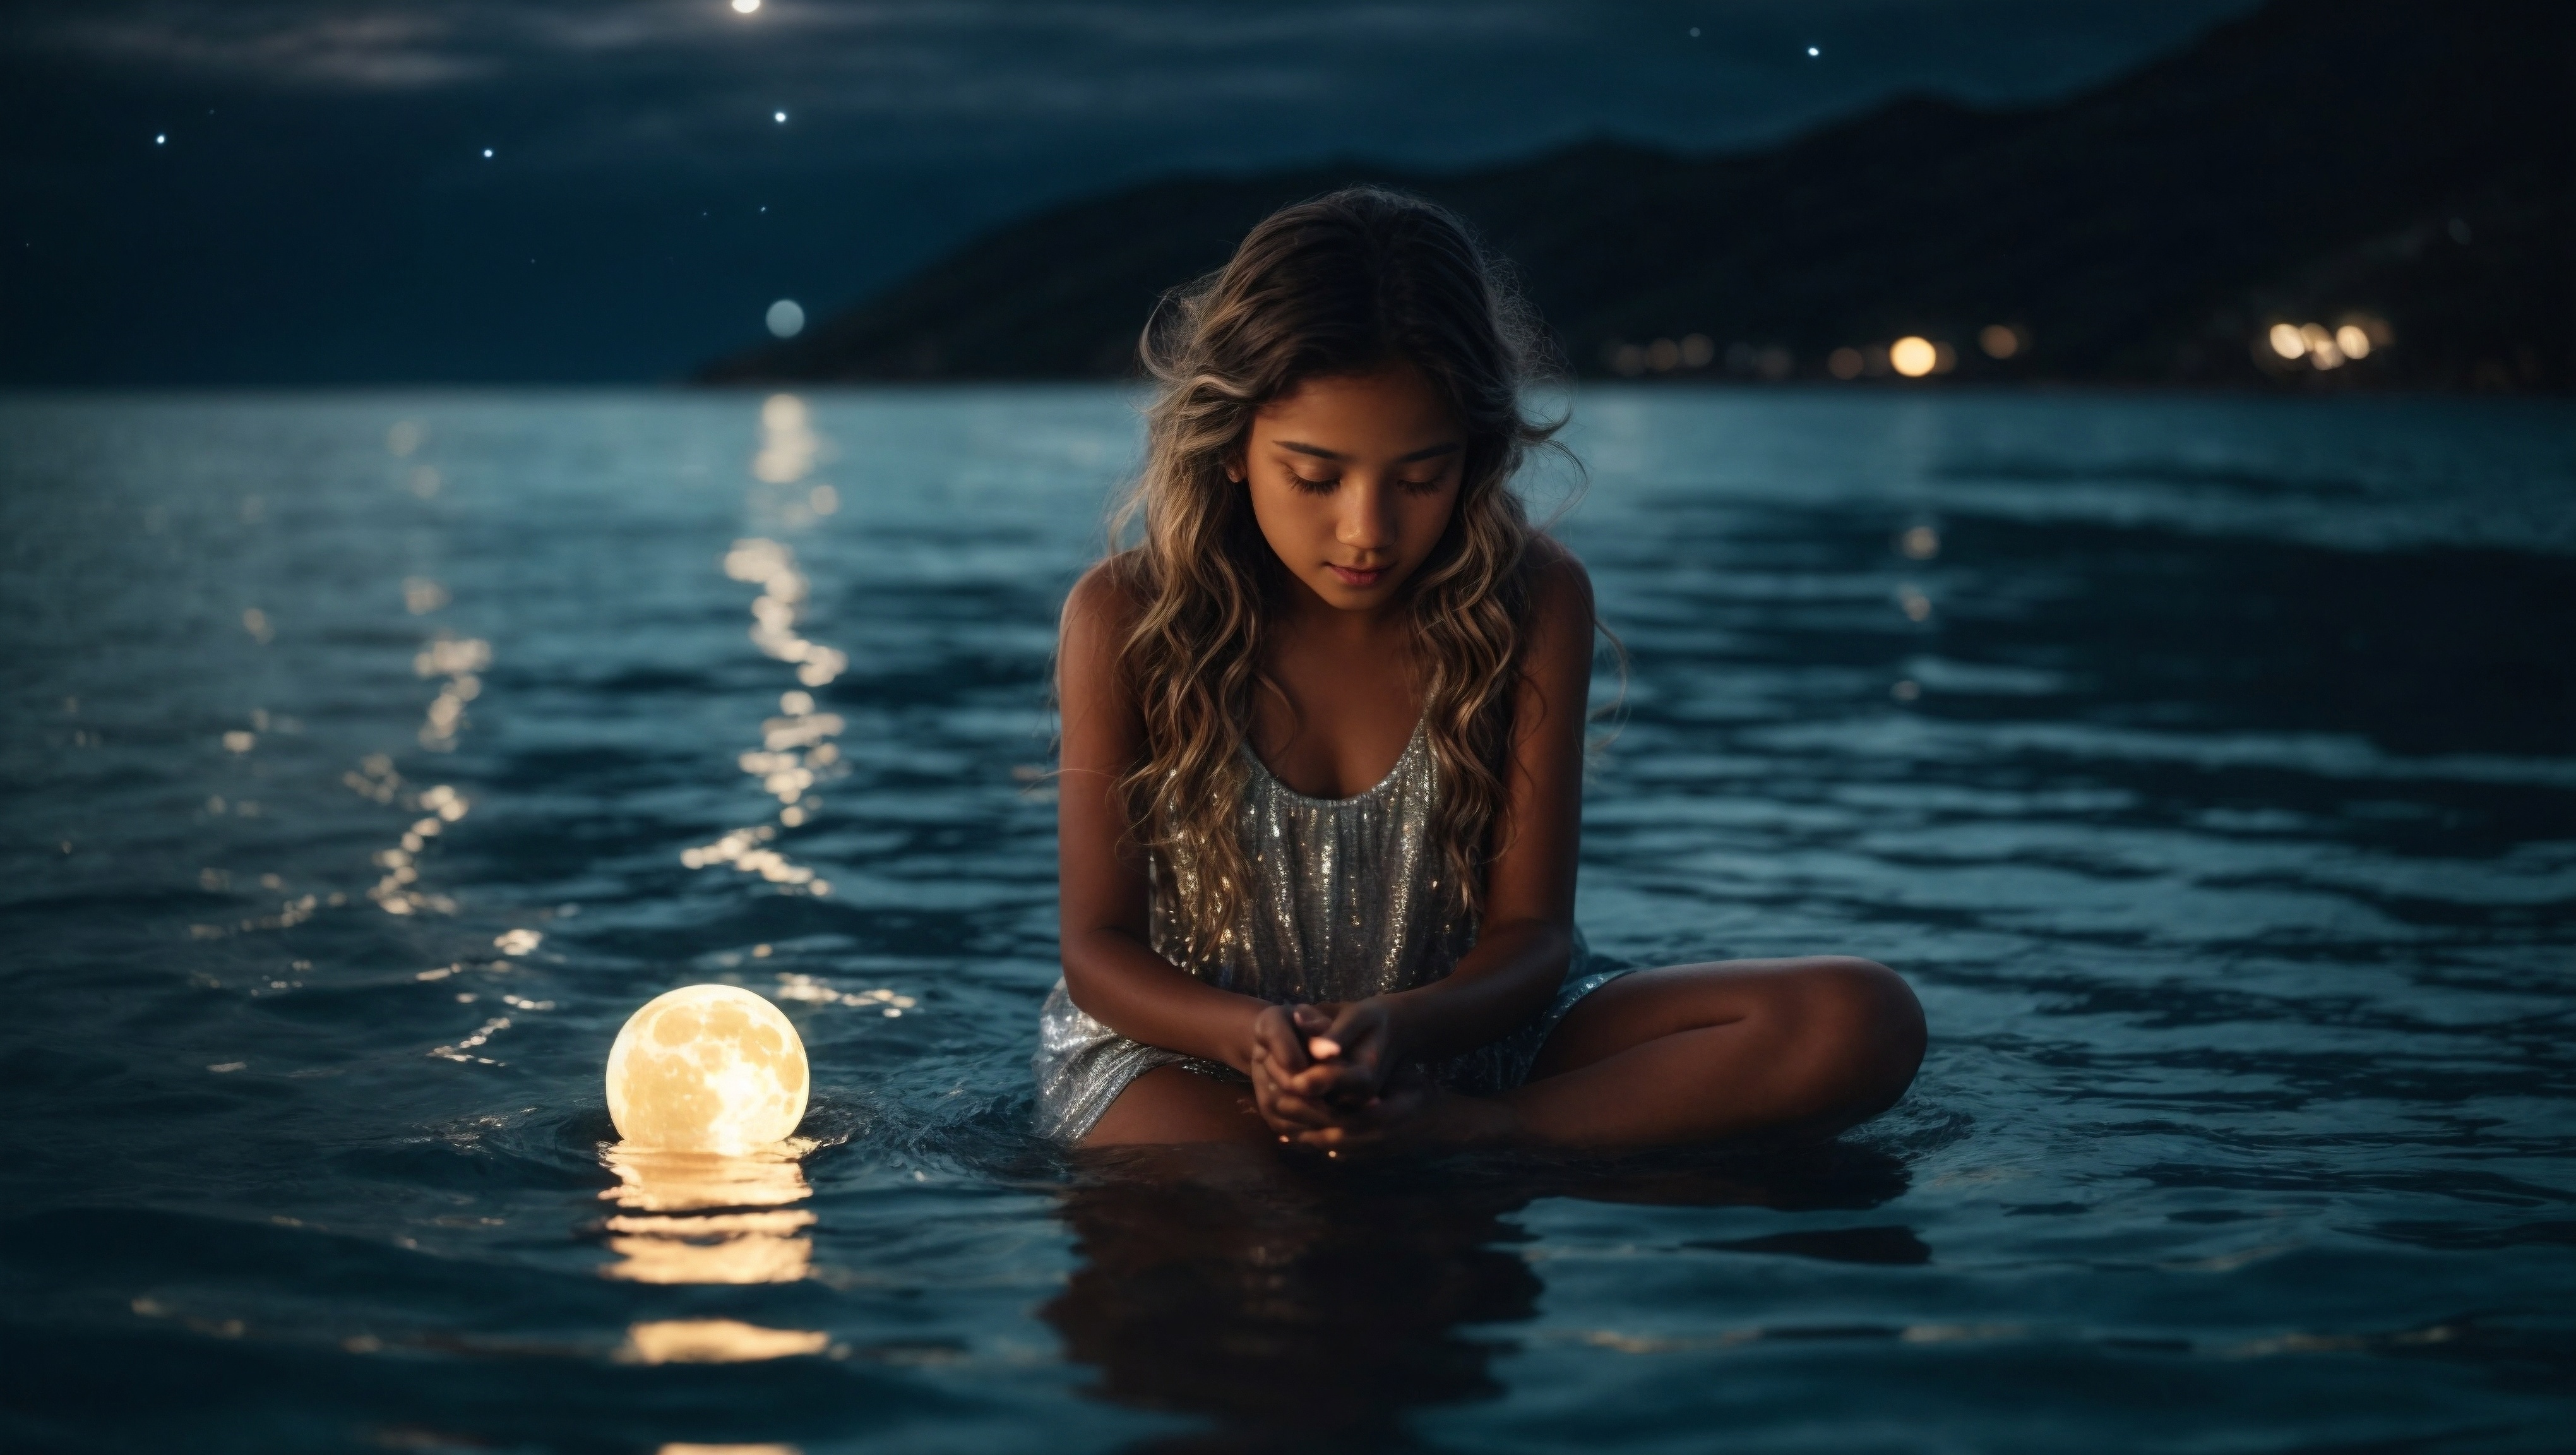 Бесплатное фото Девушка в серебристом платье сидит в водоеме у плавающей лампы